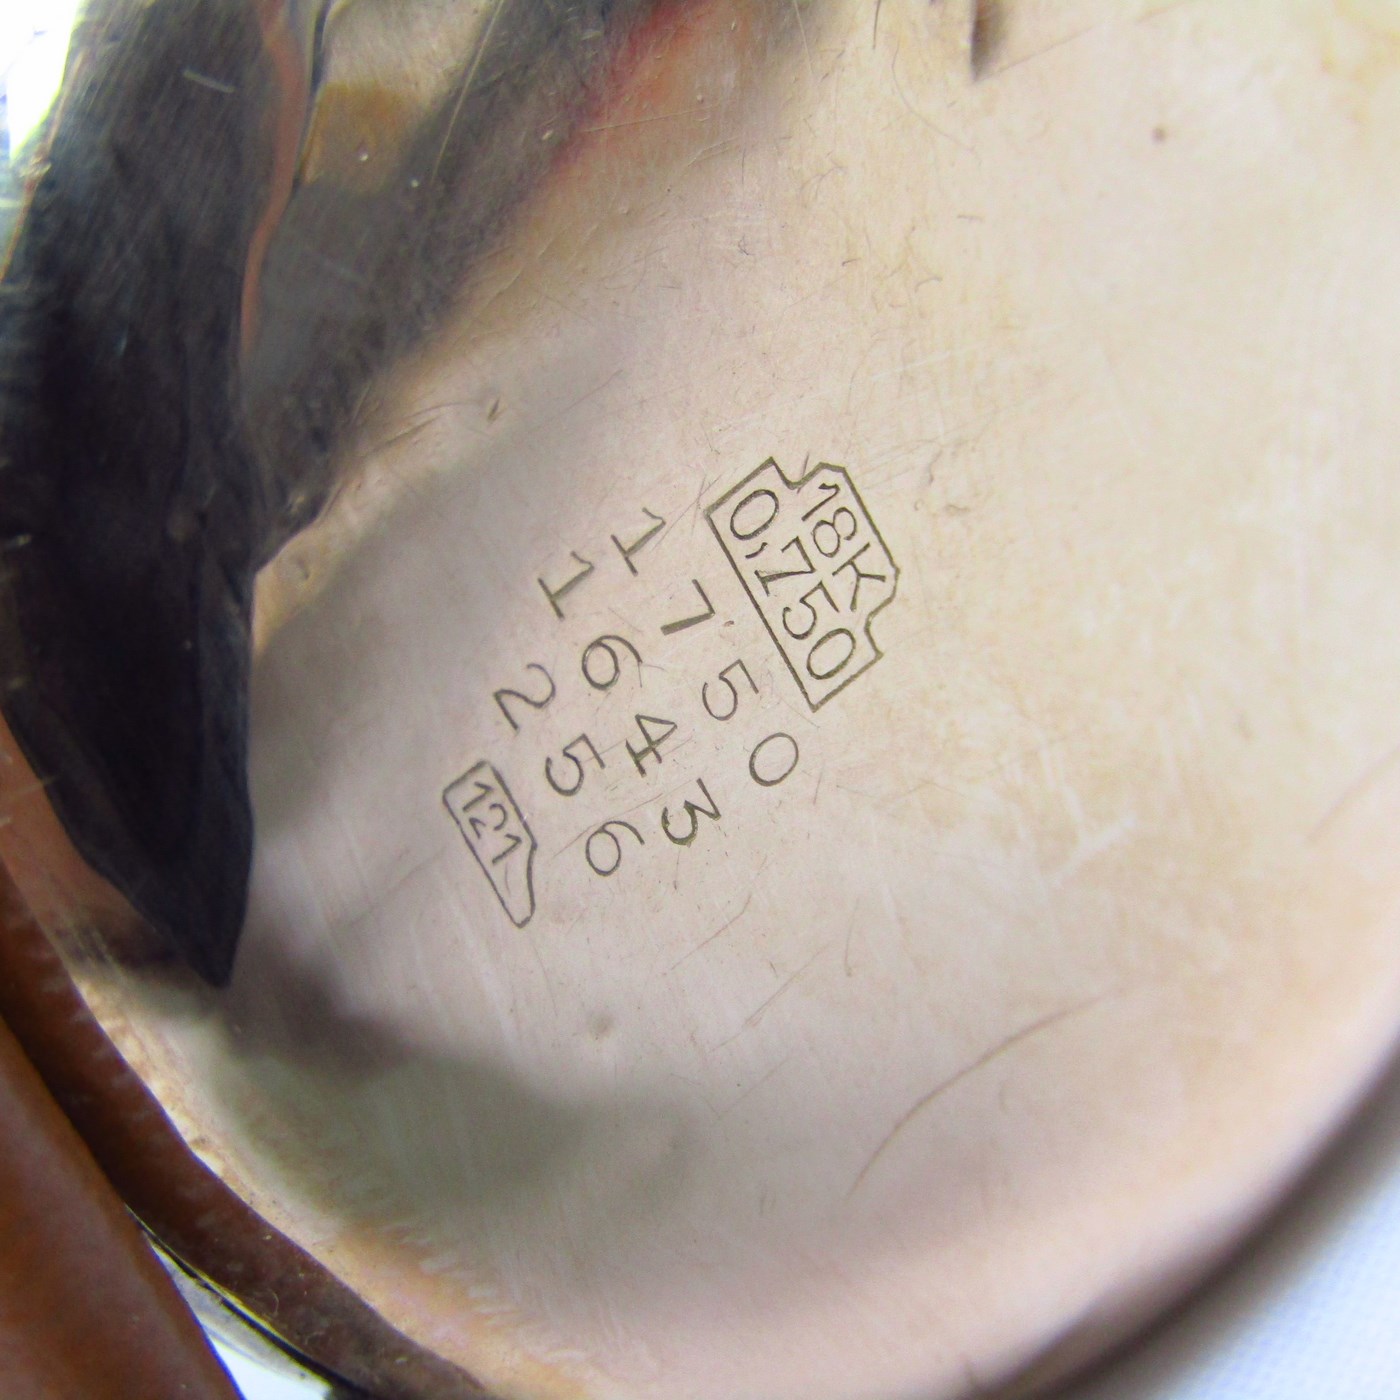 ZORRO CRONOGRAPHE SUISSE. Reloj Cronógrafo de pulsera. Oro 18k. Suiza, Ca. 1945